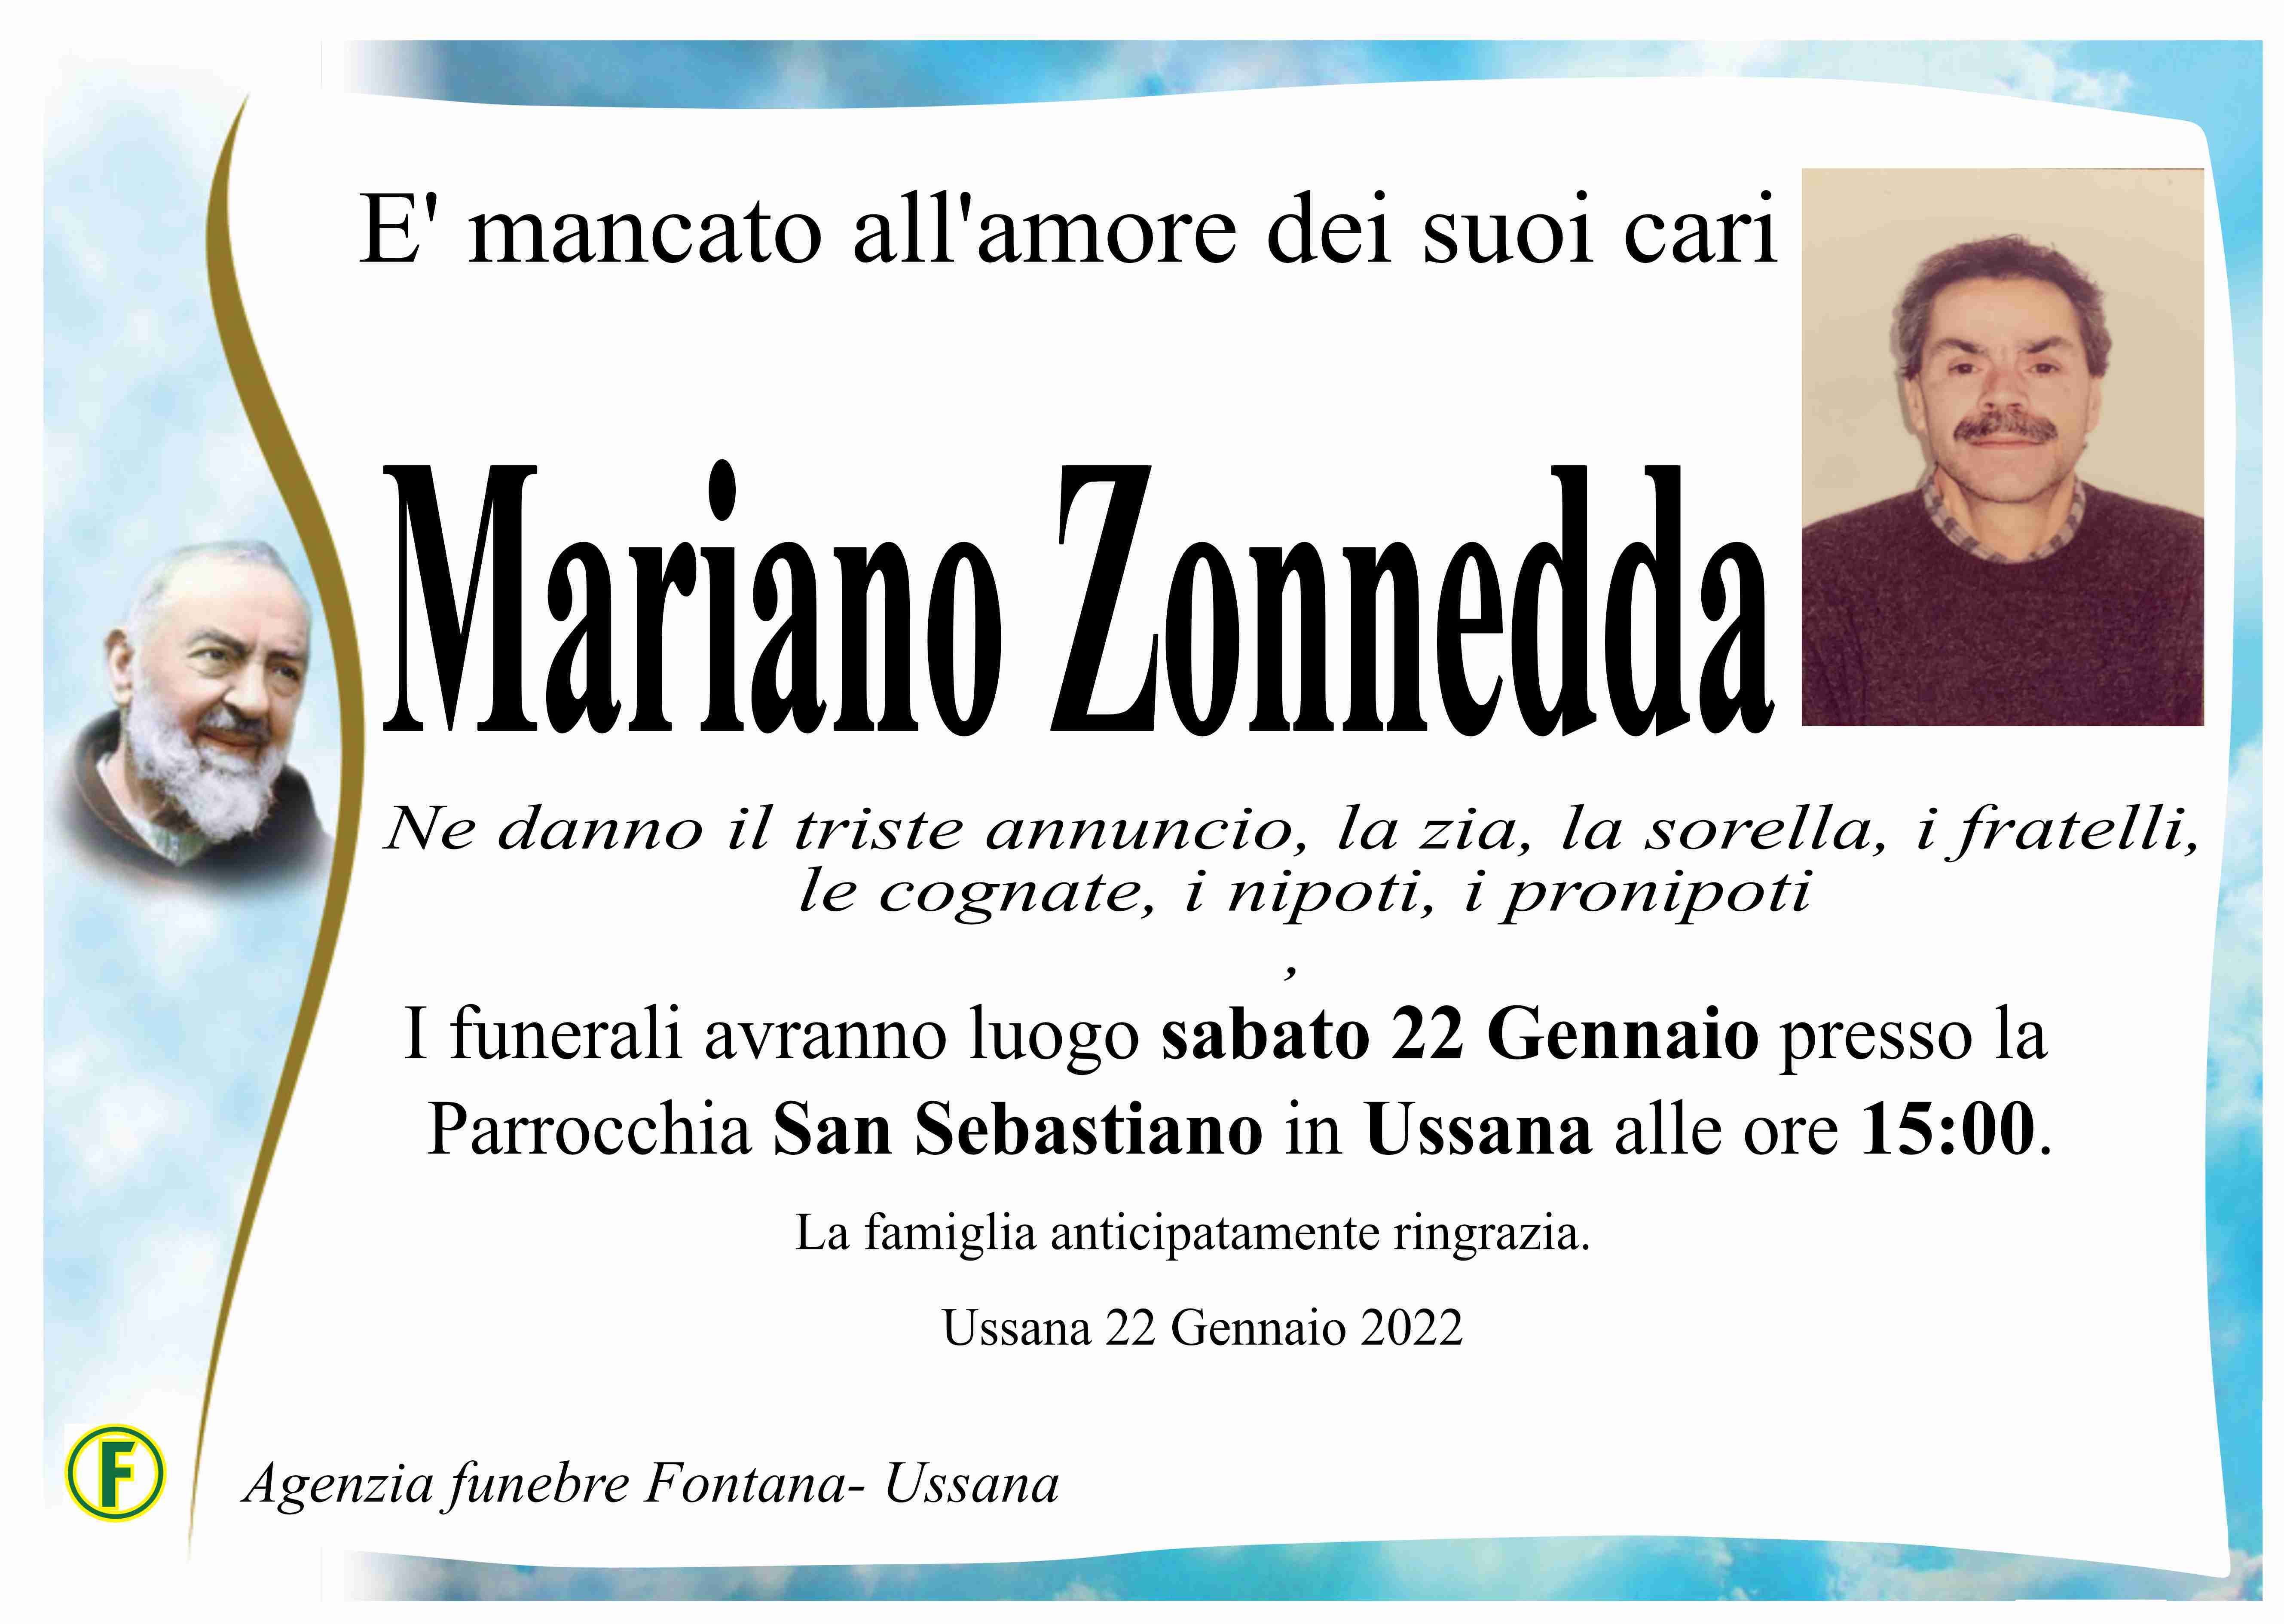 Mariano Zonnedda